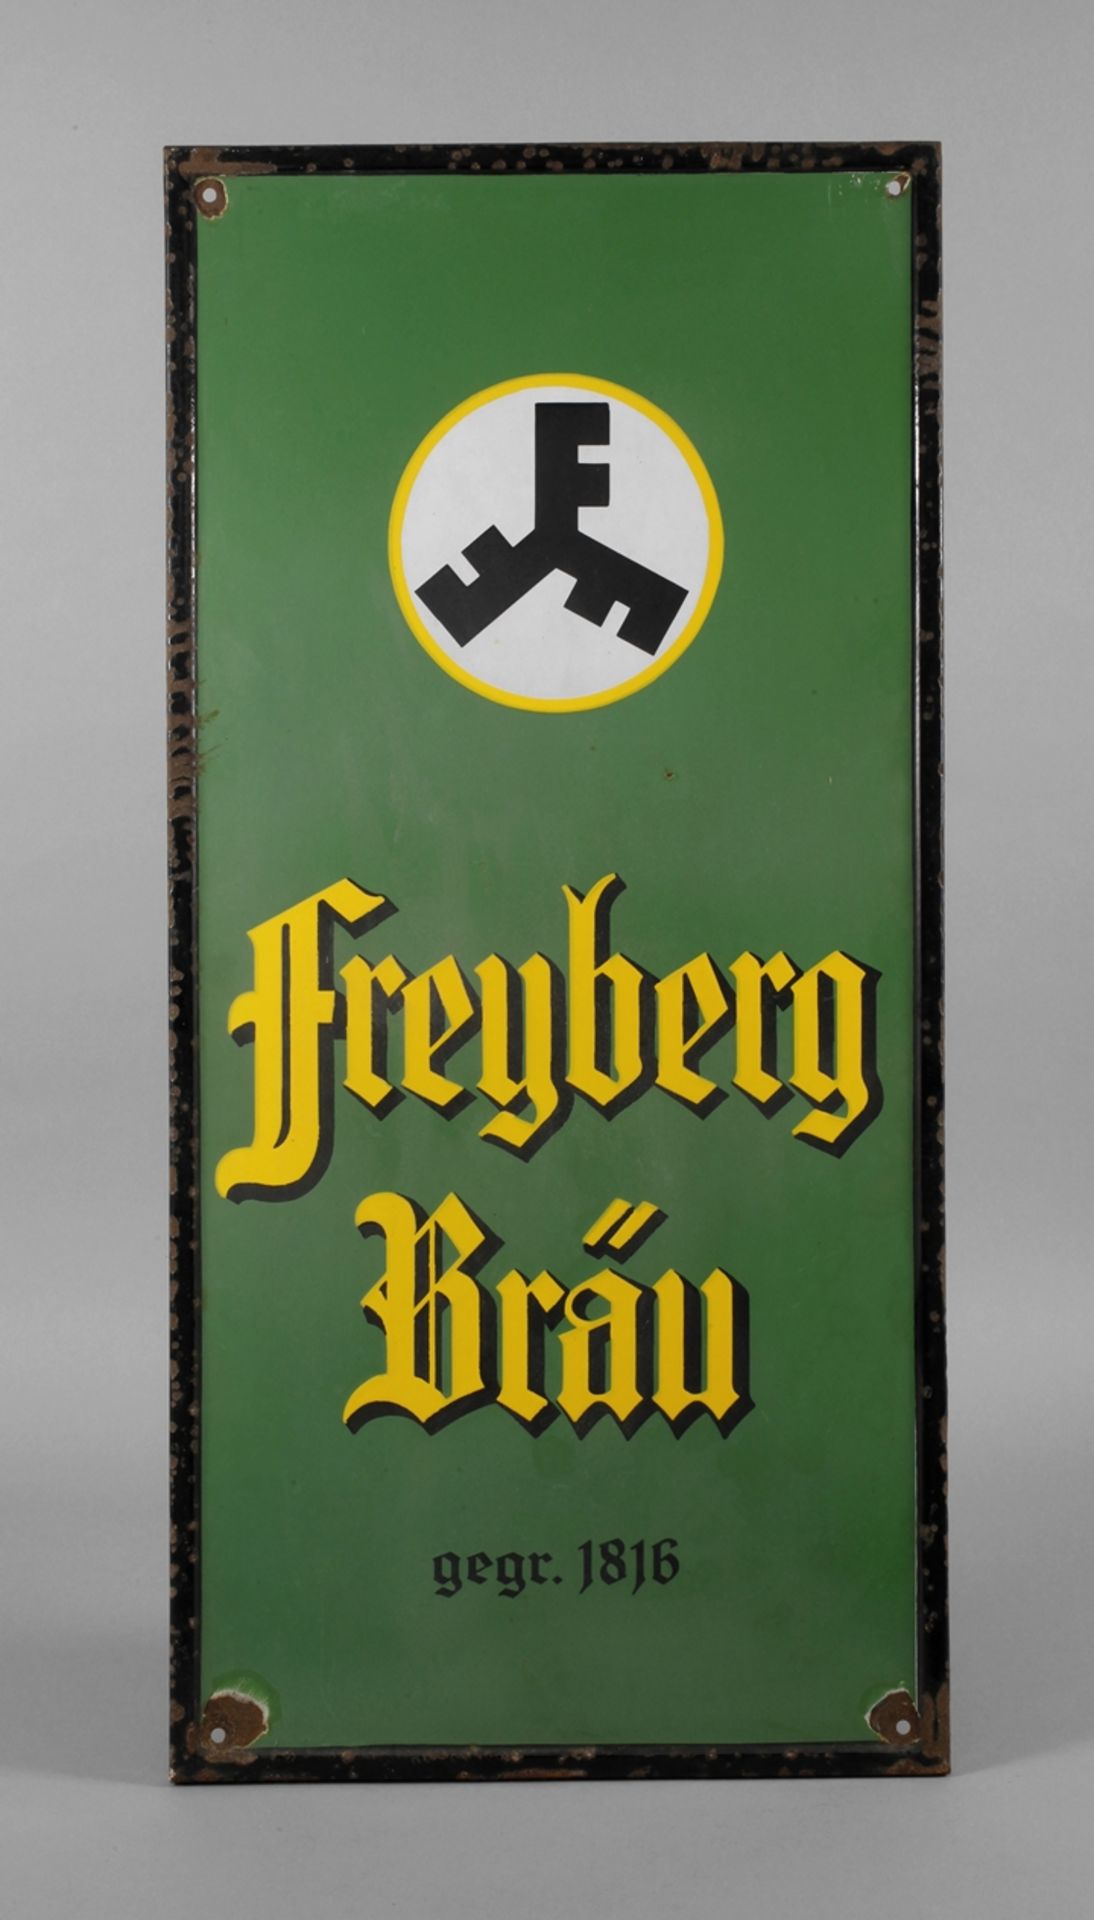 Emailleschild Freyberg Bräu